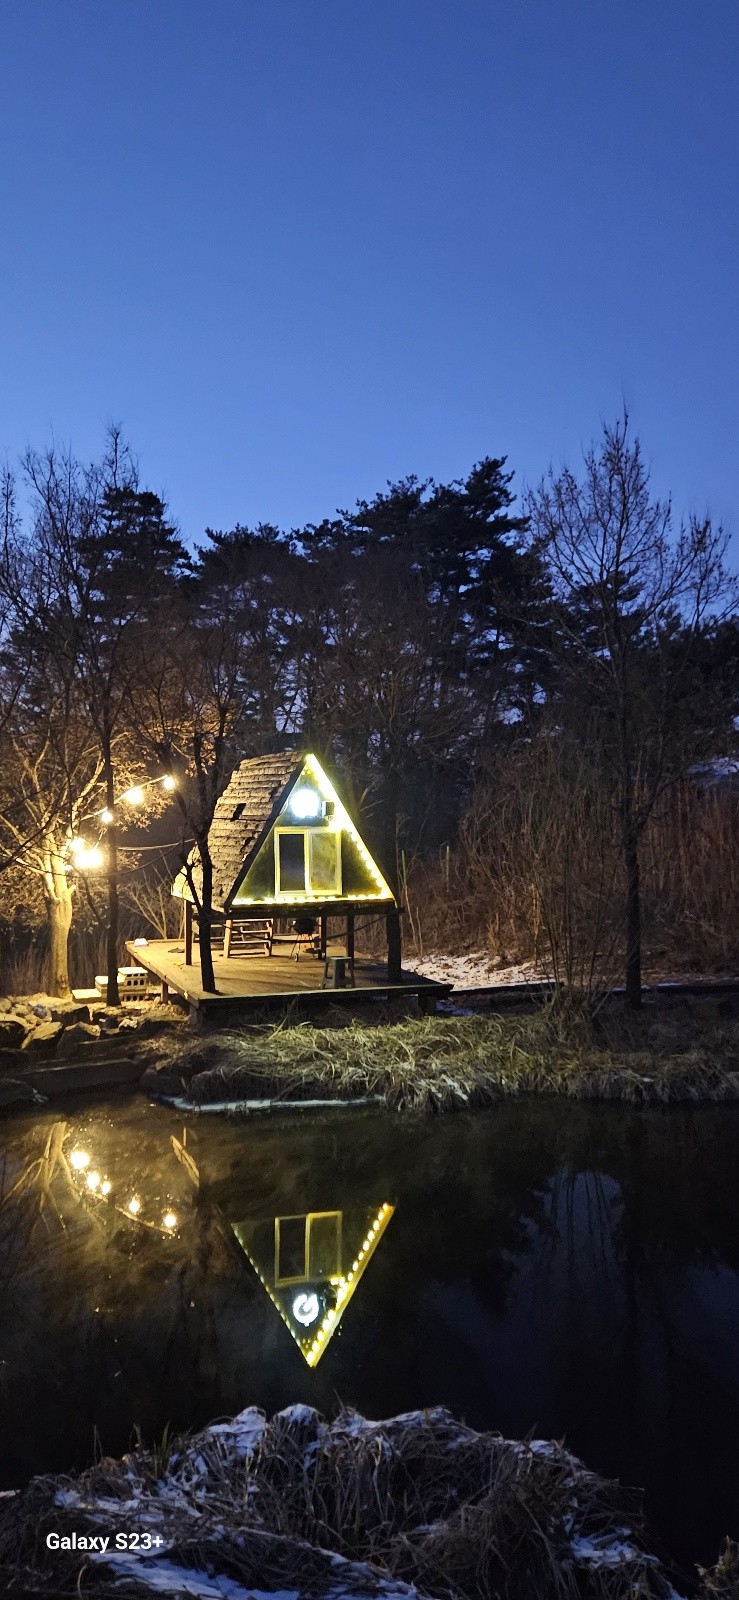 #山景#花园景观树屋2浪漫：童话般的小木屋，梦幻隐蔽处